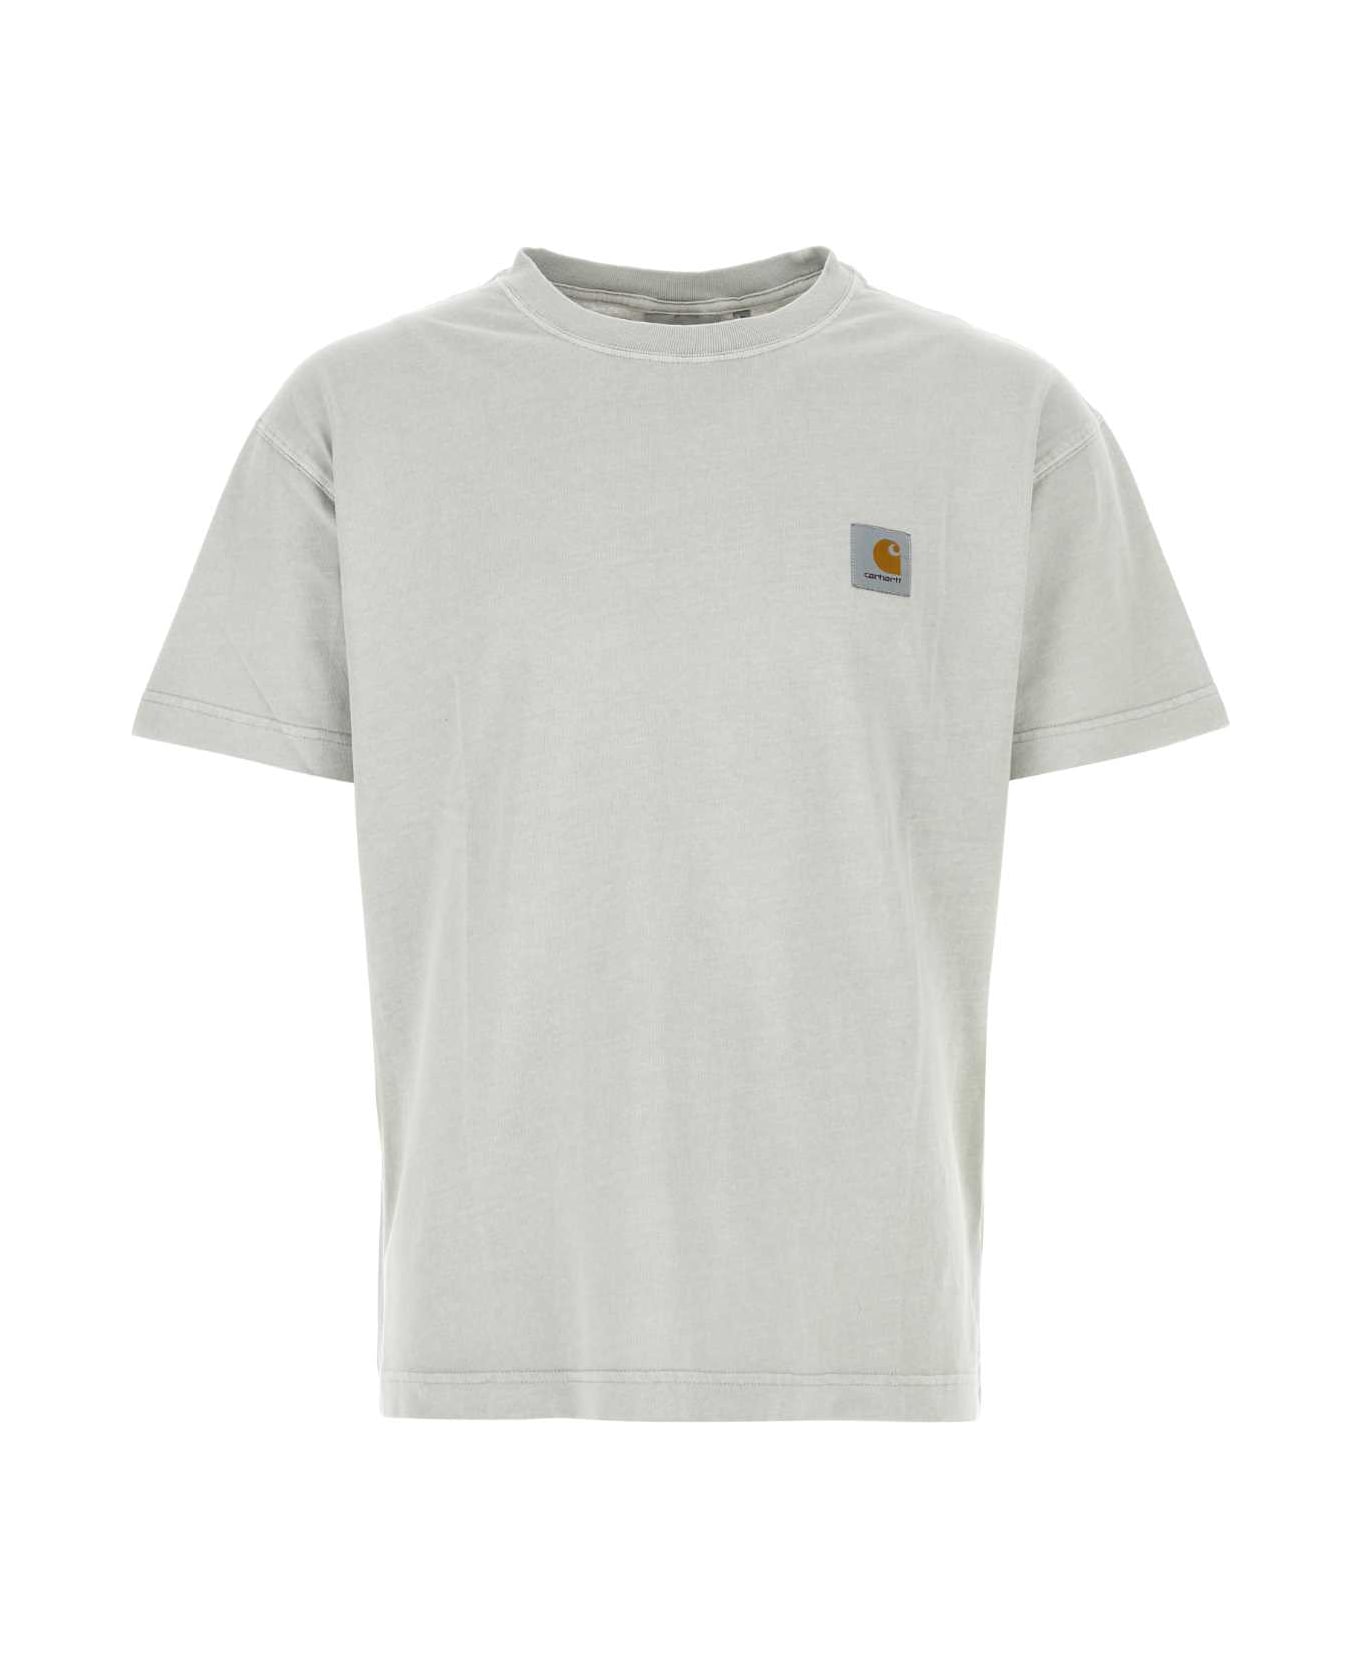 Carhartt Light Grey Cotton Oversize S/s Nelson T-shirt - SONICSILVER